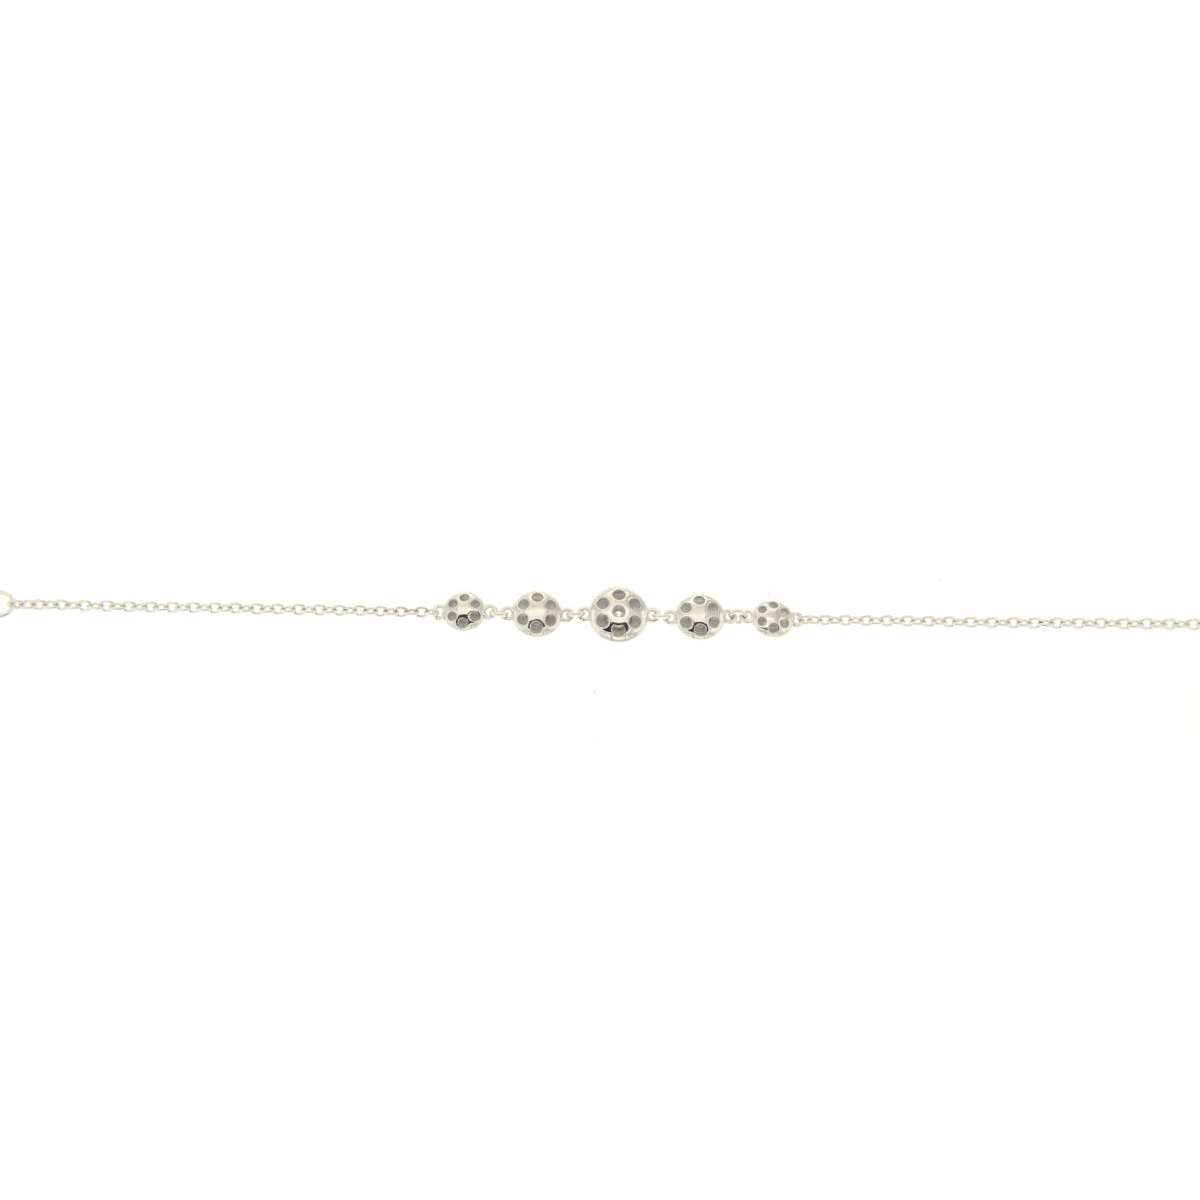 Bracelet 0.07 carats diamonds G-VS1